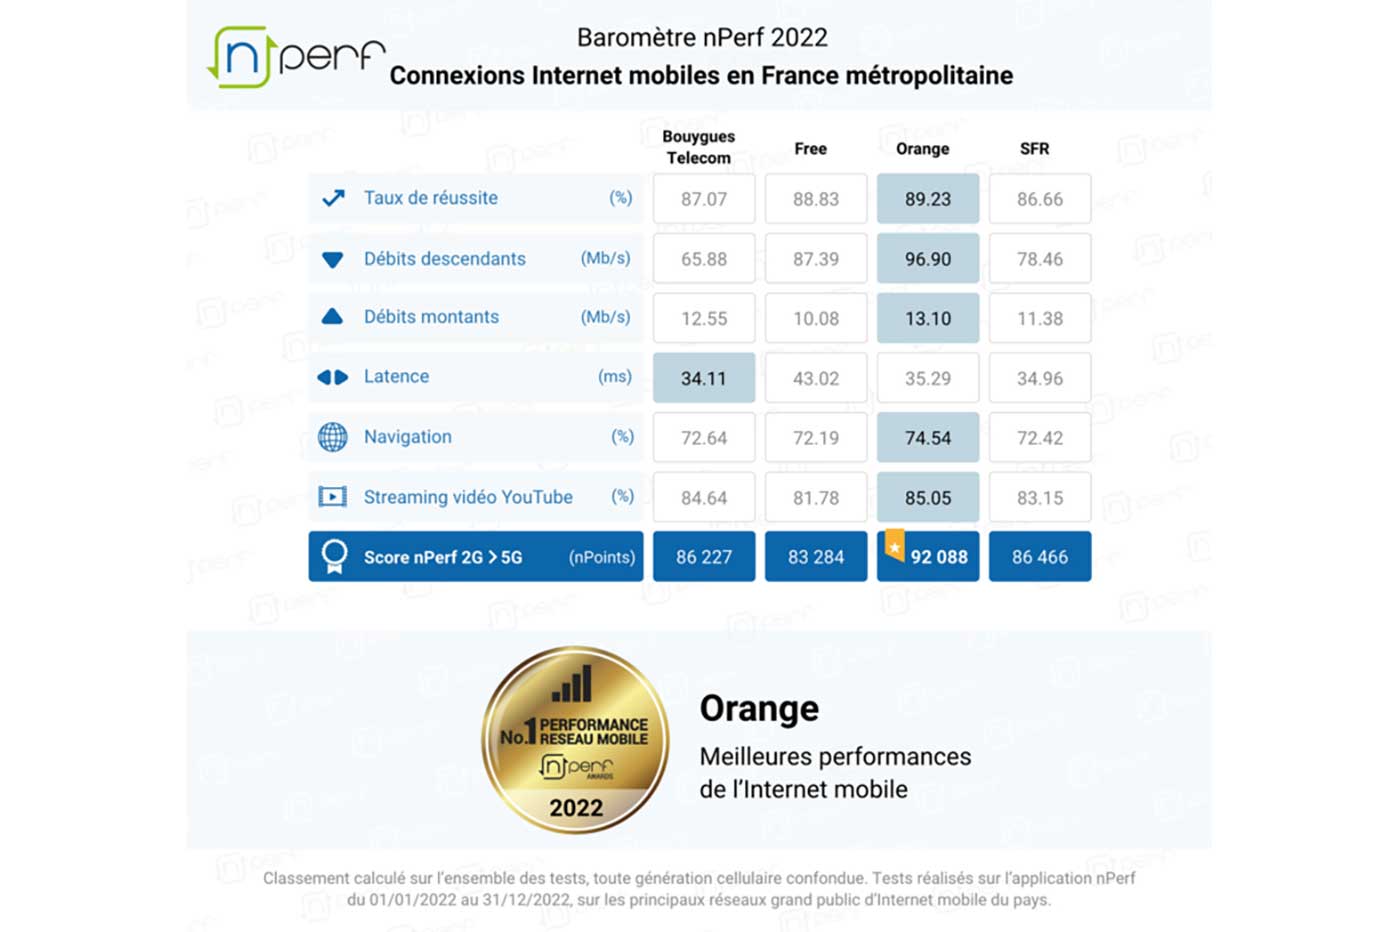 nPerf 2022 Barometer